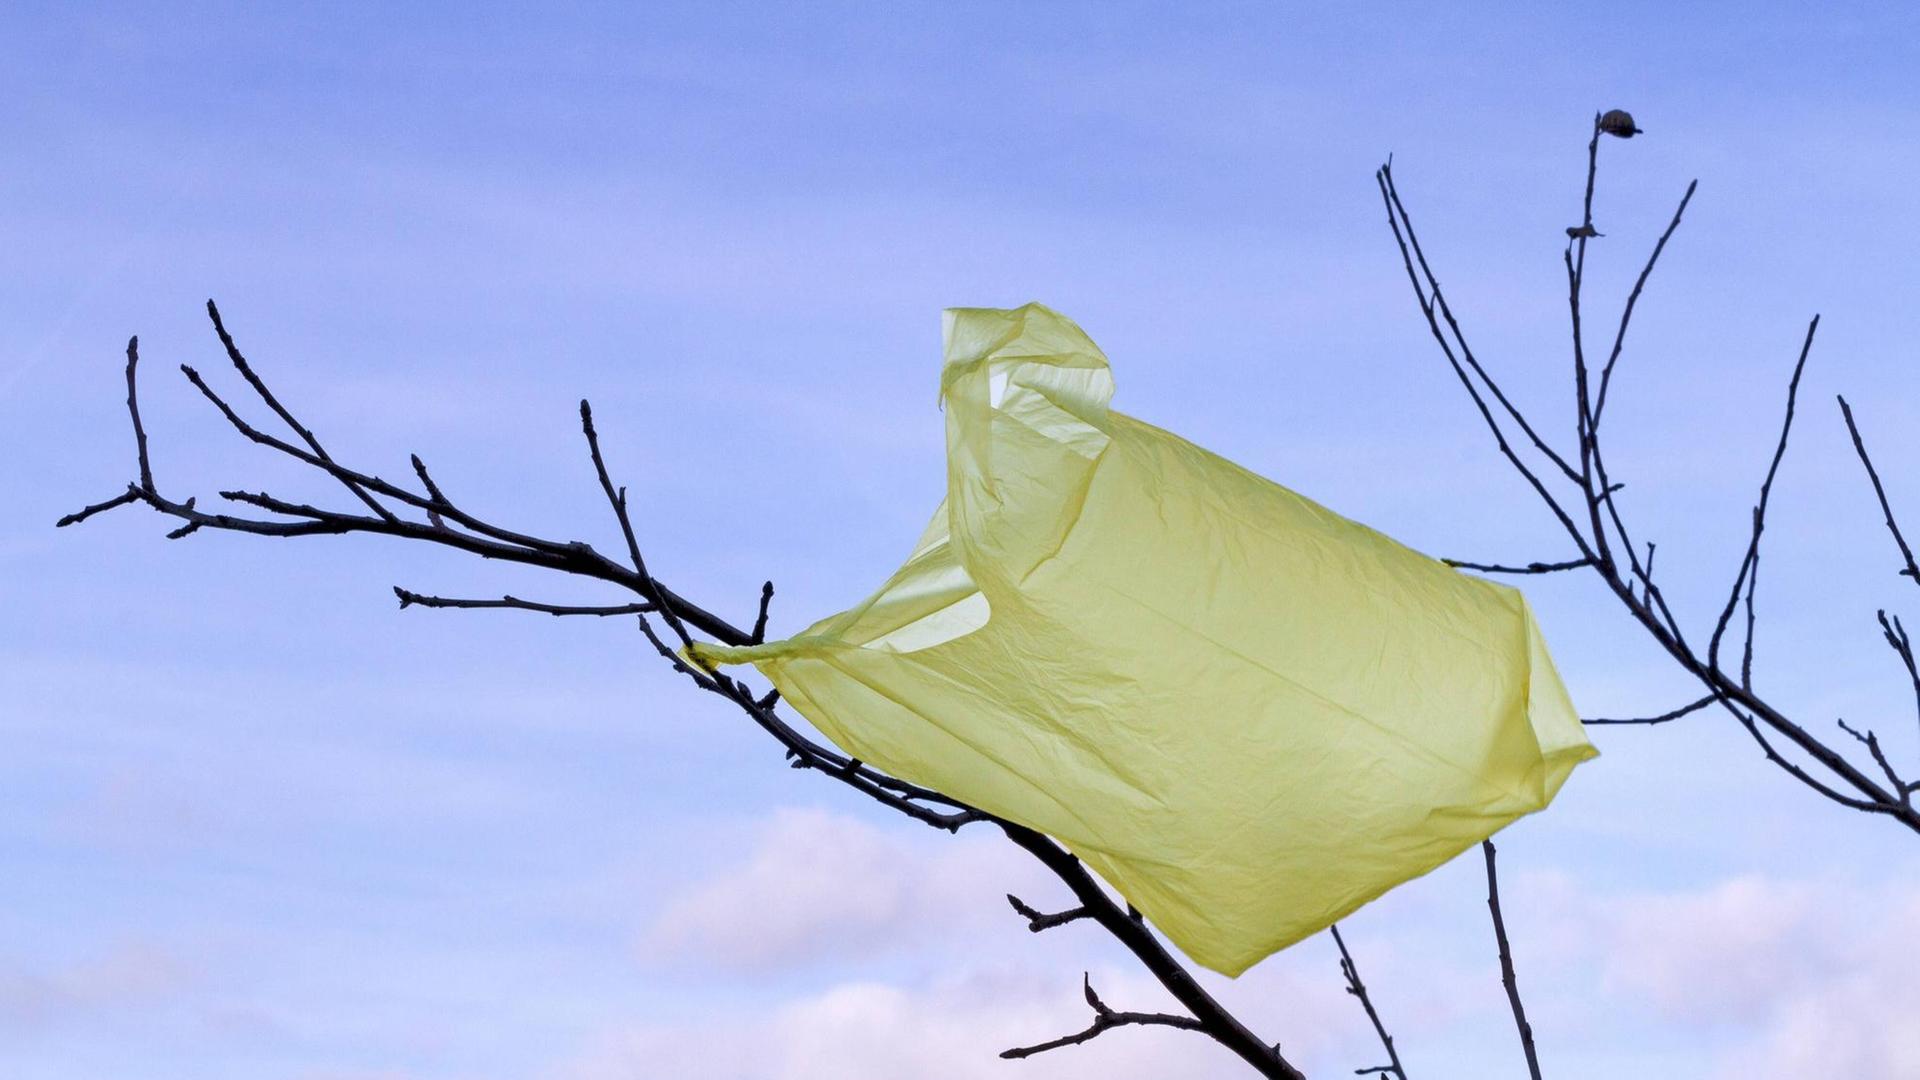 Eine gelbe Plastiktüte hängt in den blätterlosen Ästen eines Baums.